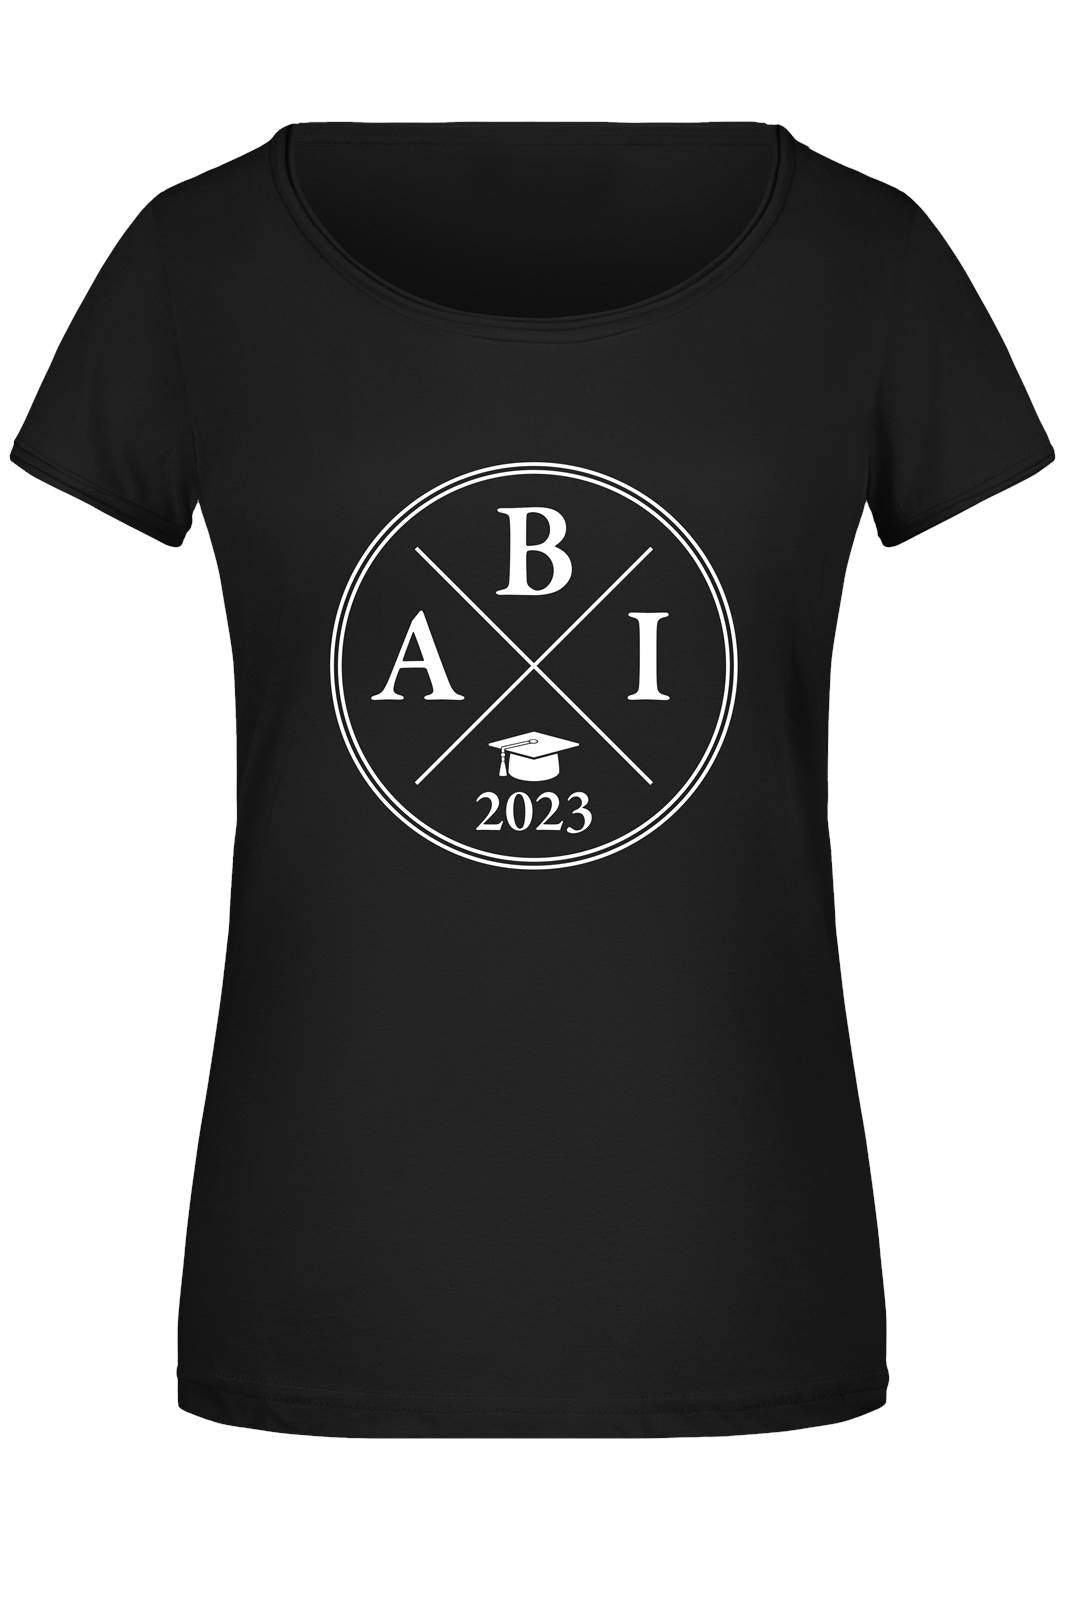 Bild: T-Shirt Damen - Abi 2023 Geschenkidee